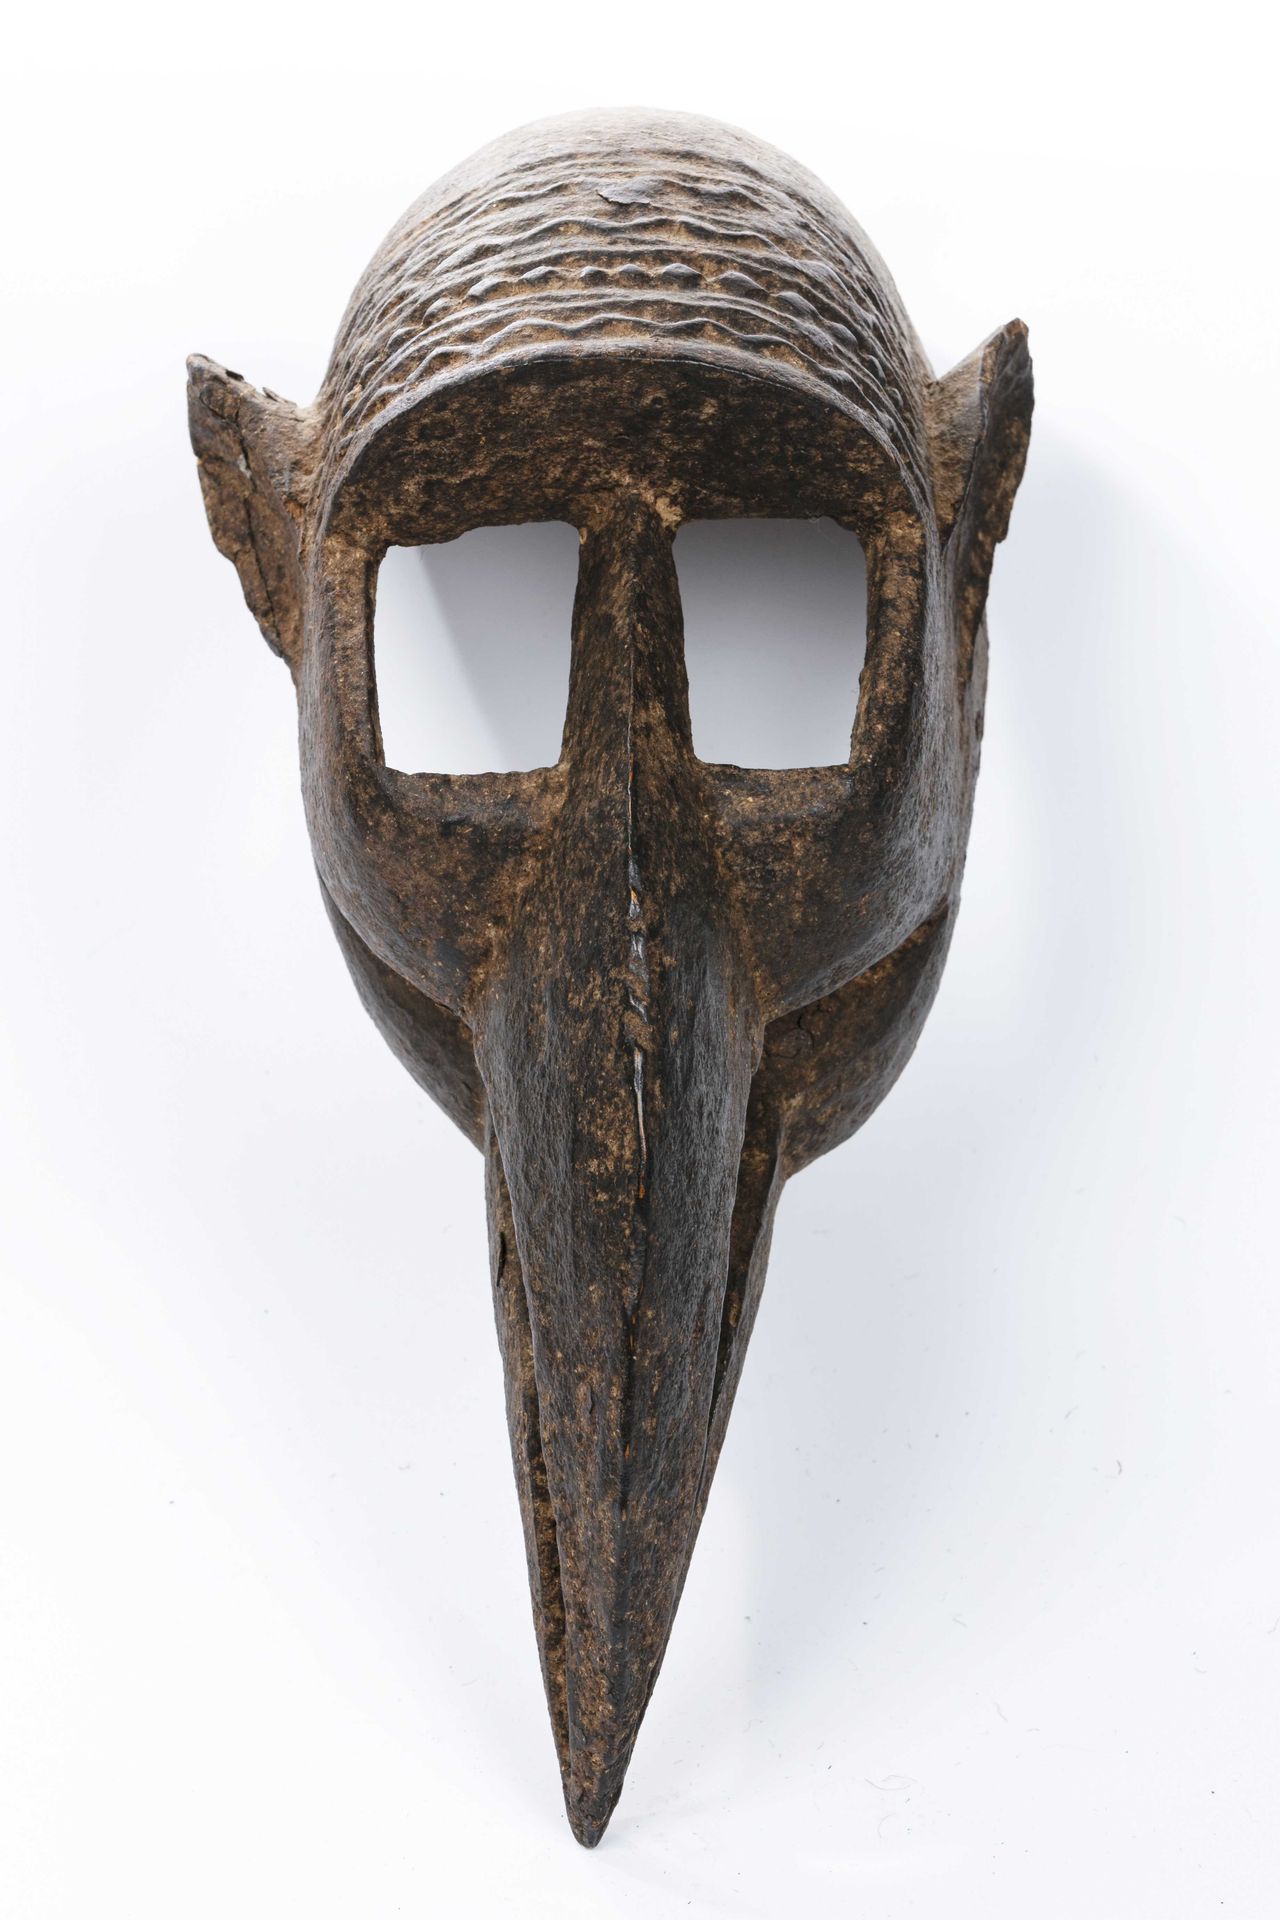 Null Maschera Dogon 
Mali 
Legno
Altezza: 46 cm
Maschera zoomorfa, dalle forme s&hellip;